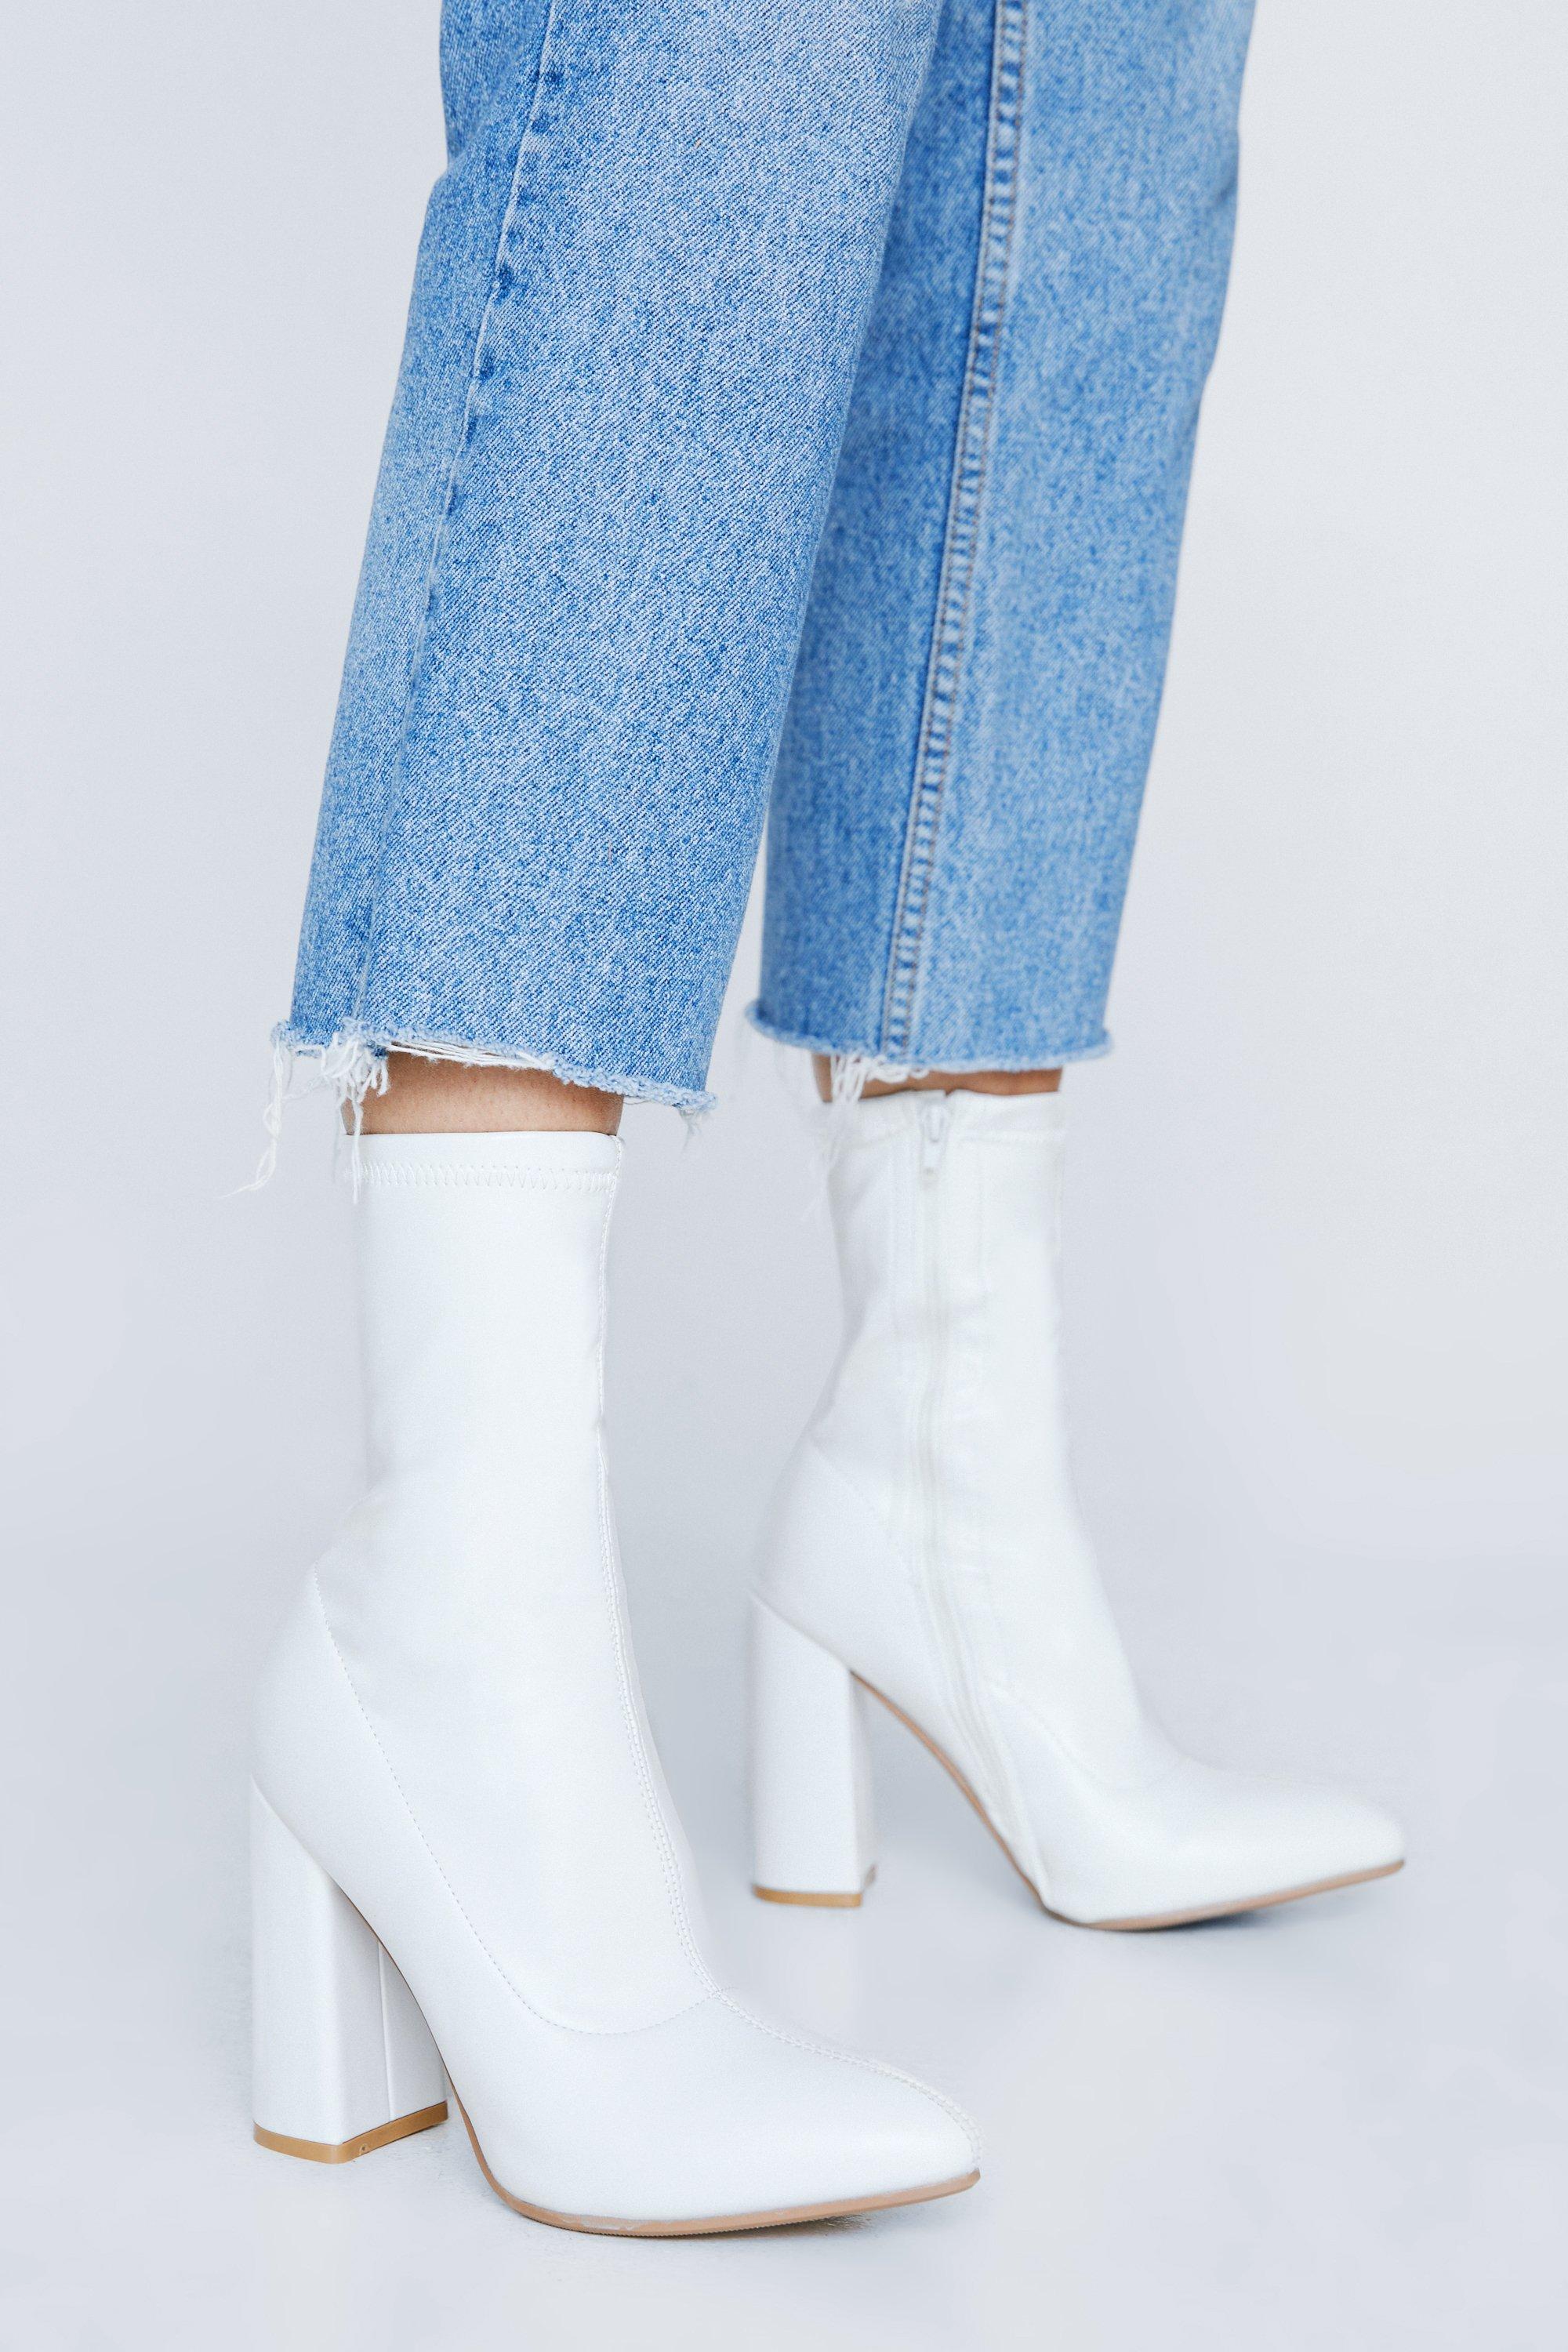 white heeled boots uk